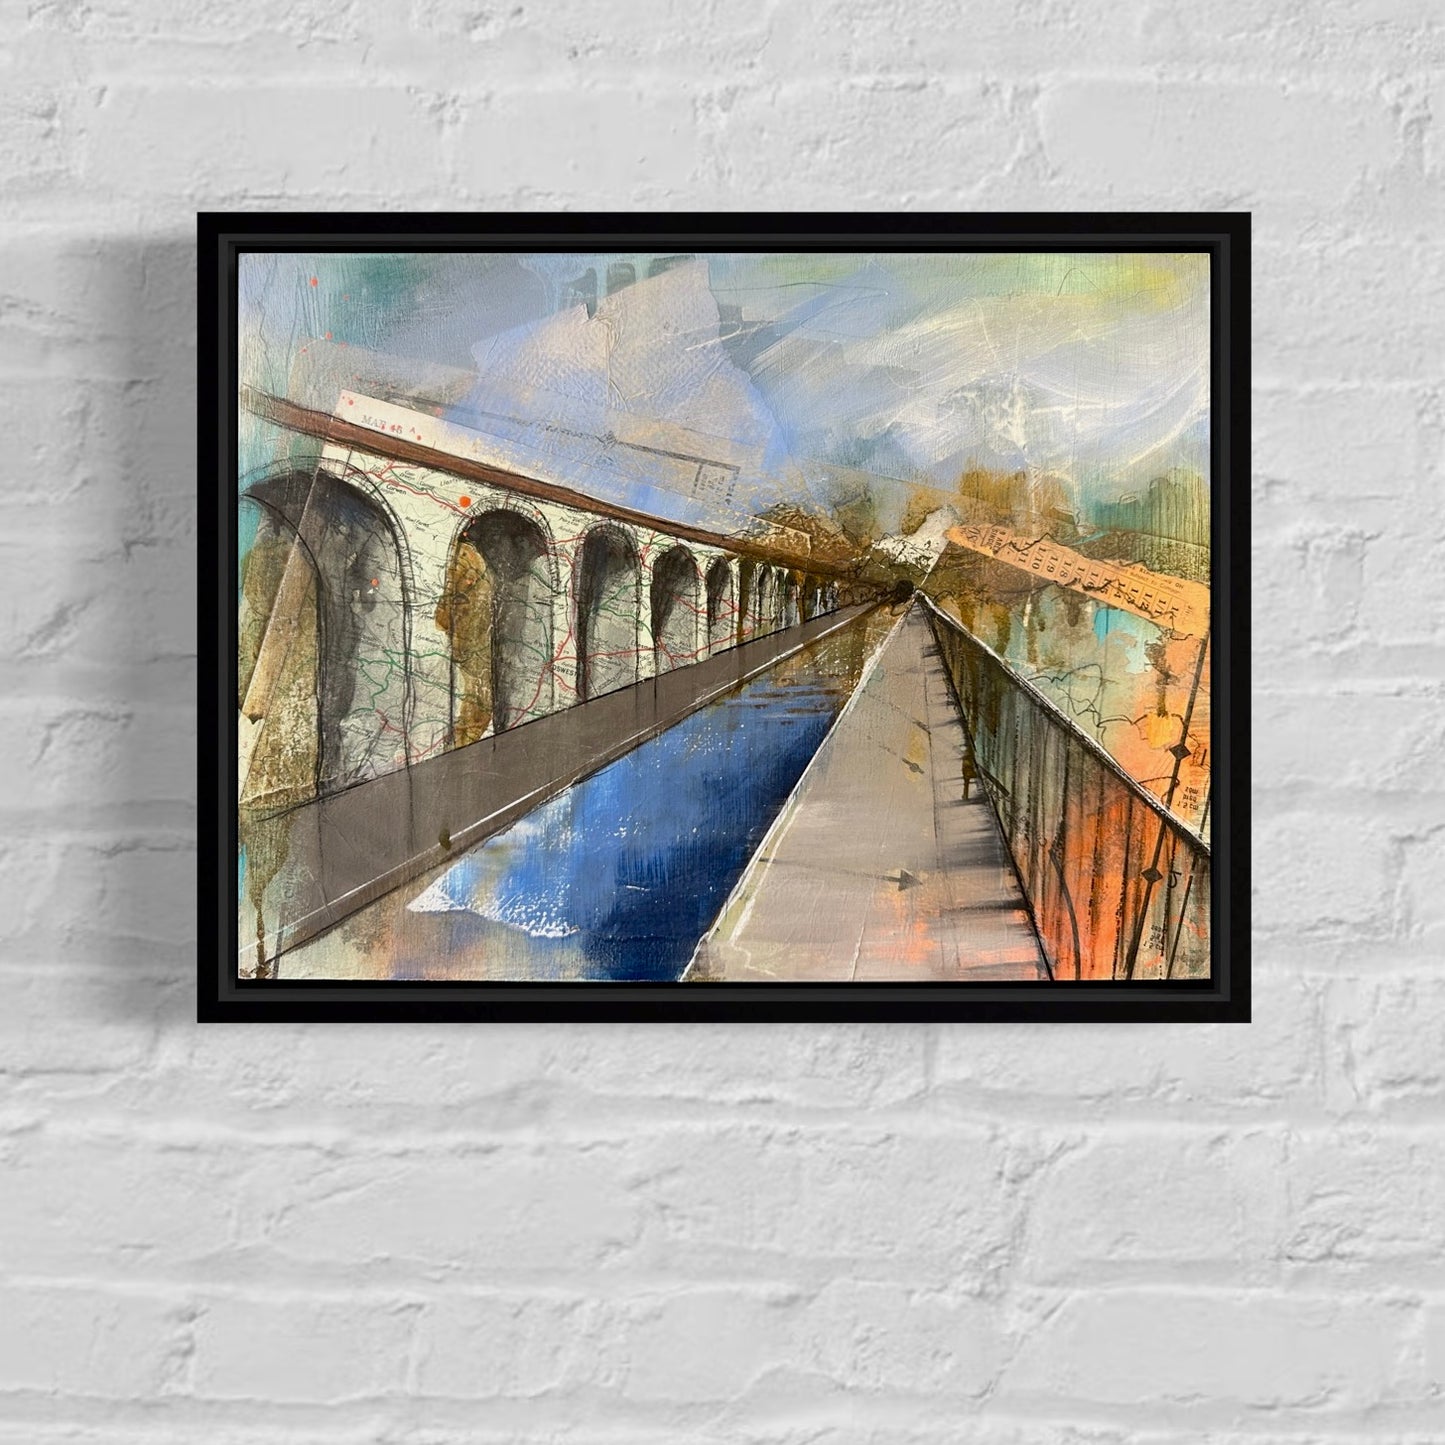 'Chirk Aqueduct' [Original Painting]